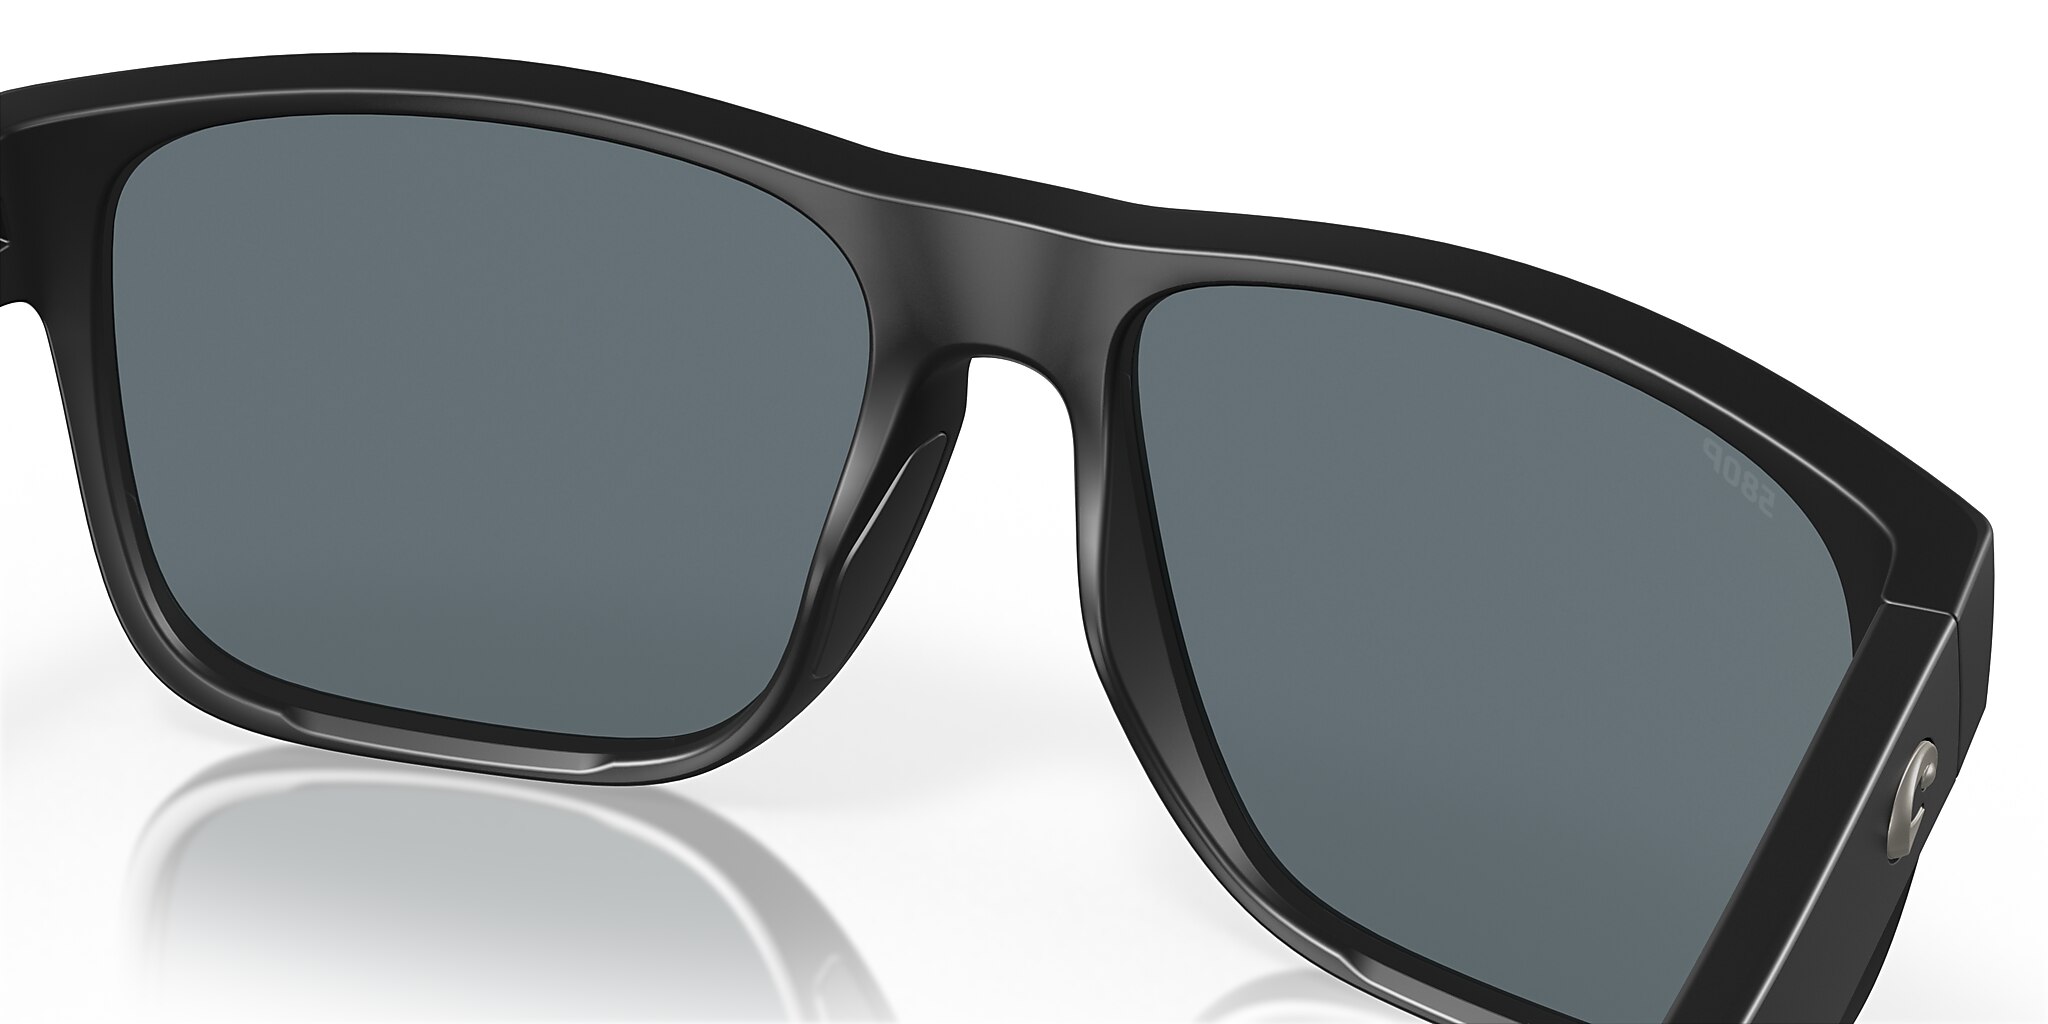 Spearo XL Polarized Sunglasses in Blue Mirror | Costa Del Mar®